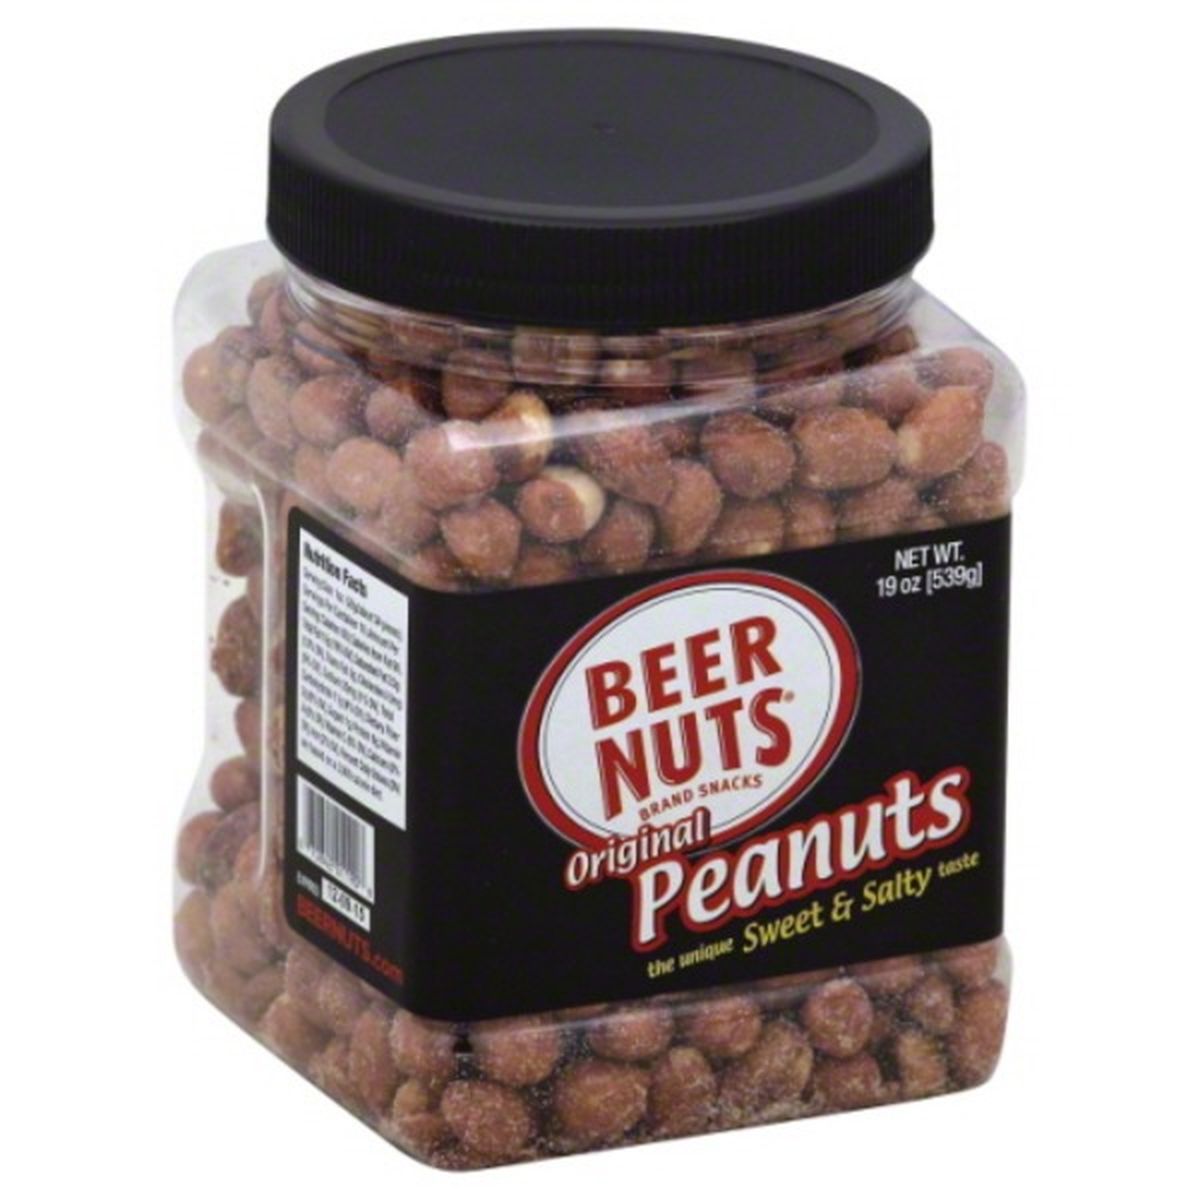 Calories in BEER NUTS Peanuts, Original